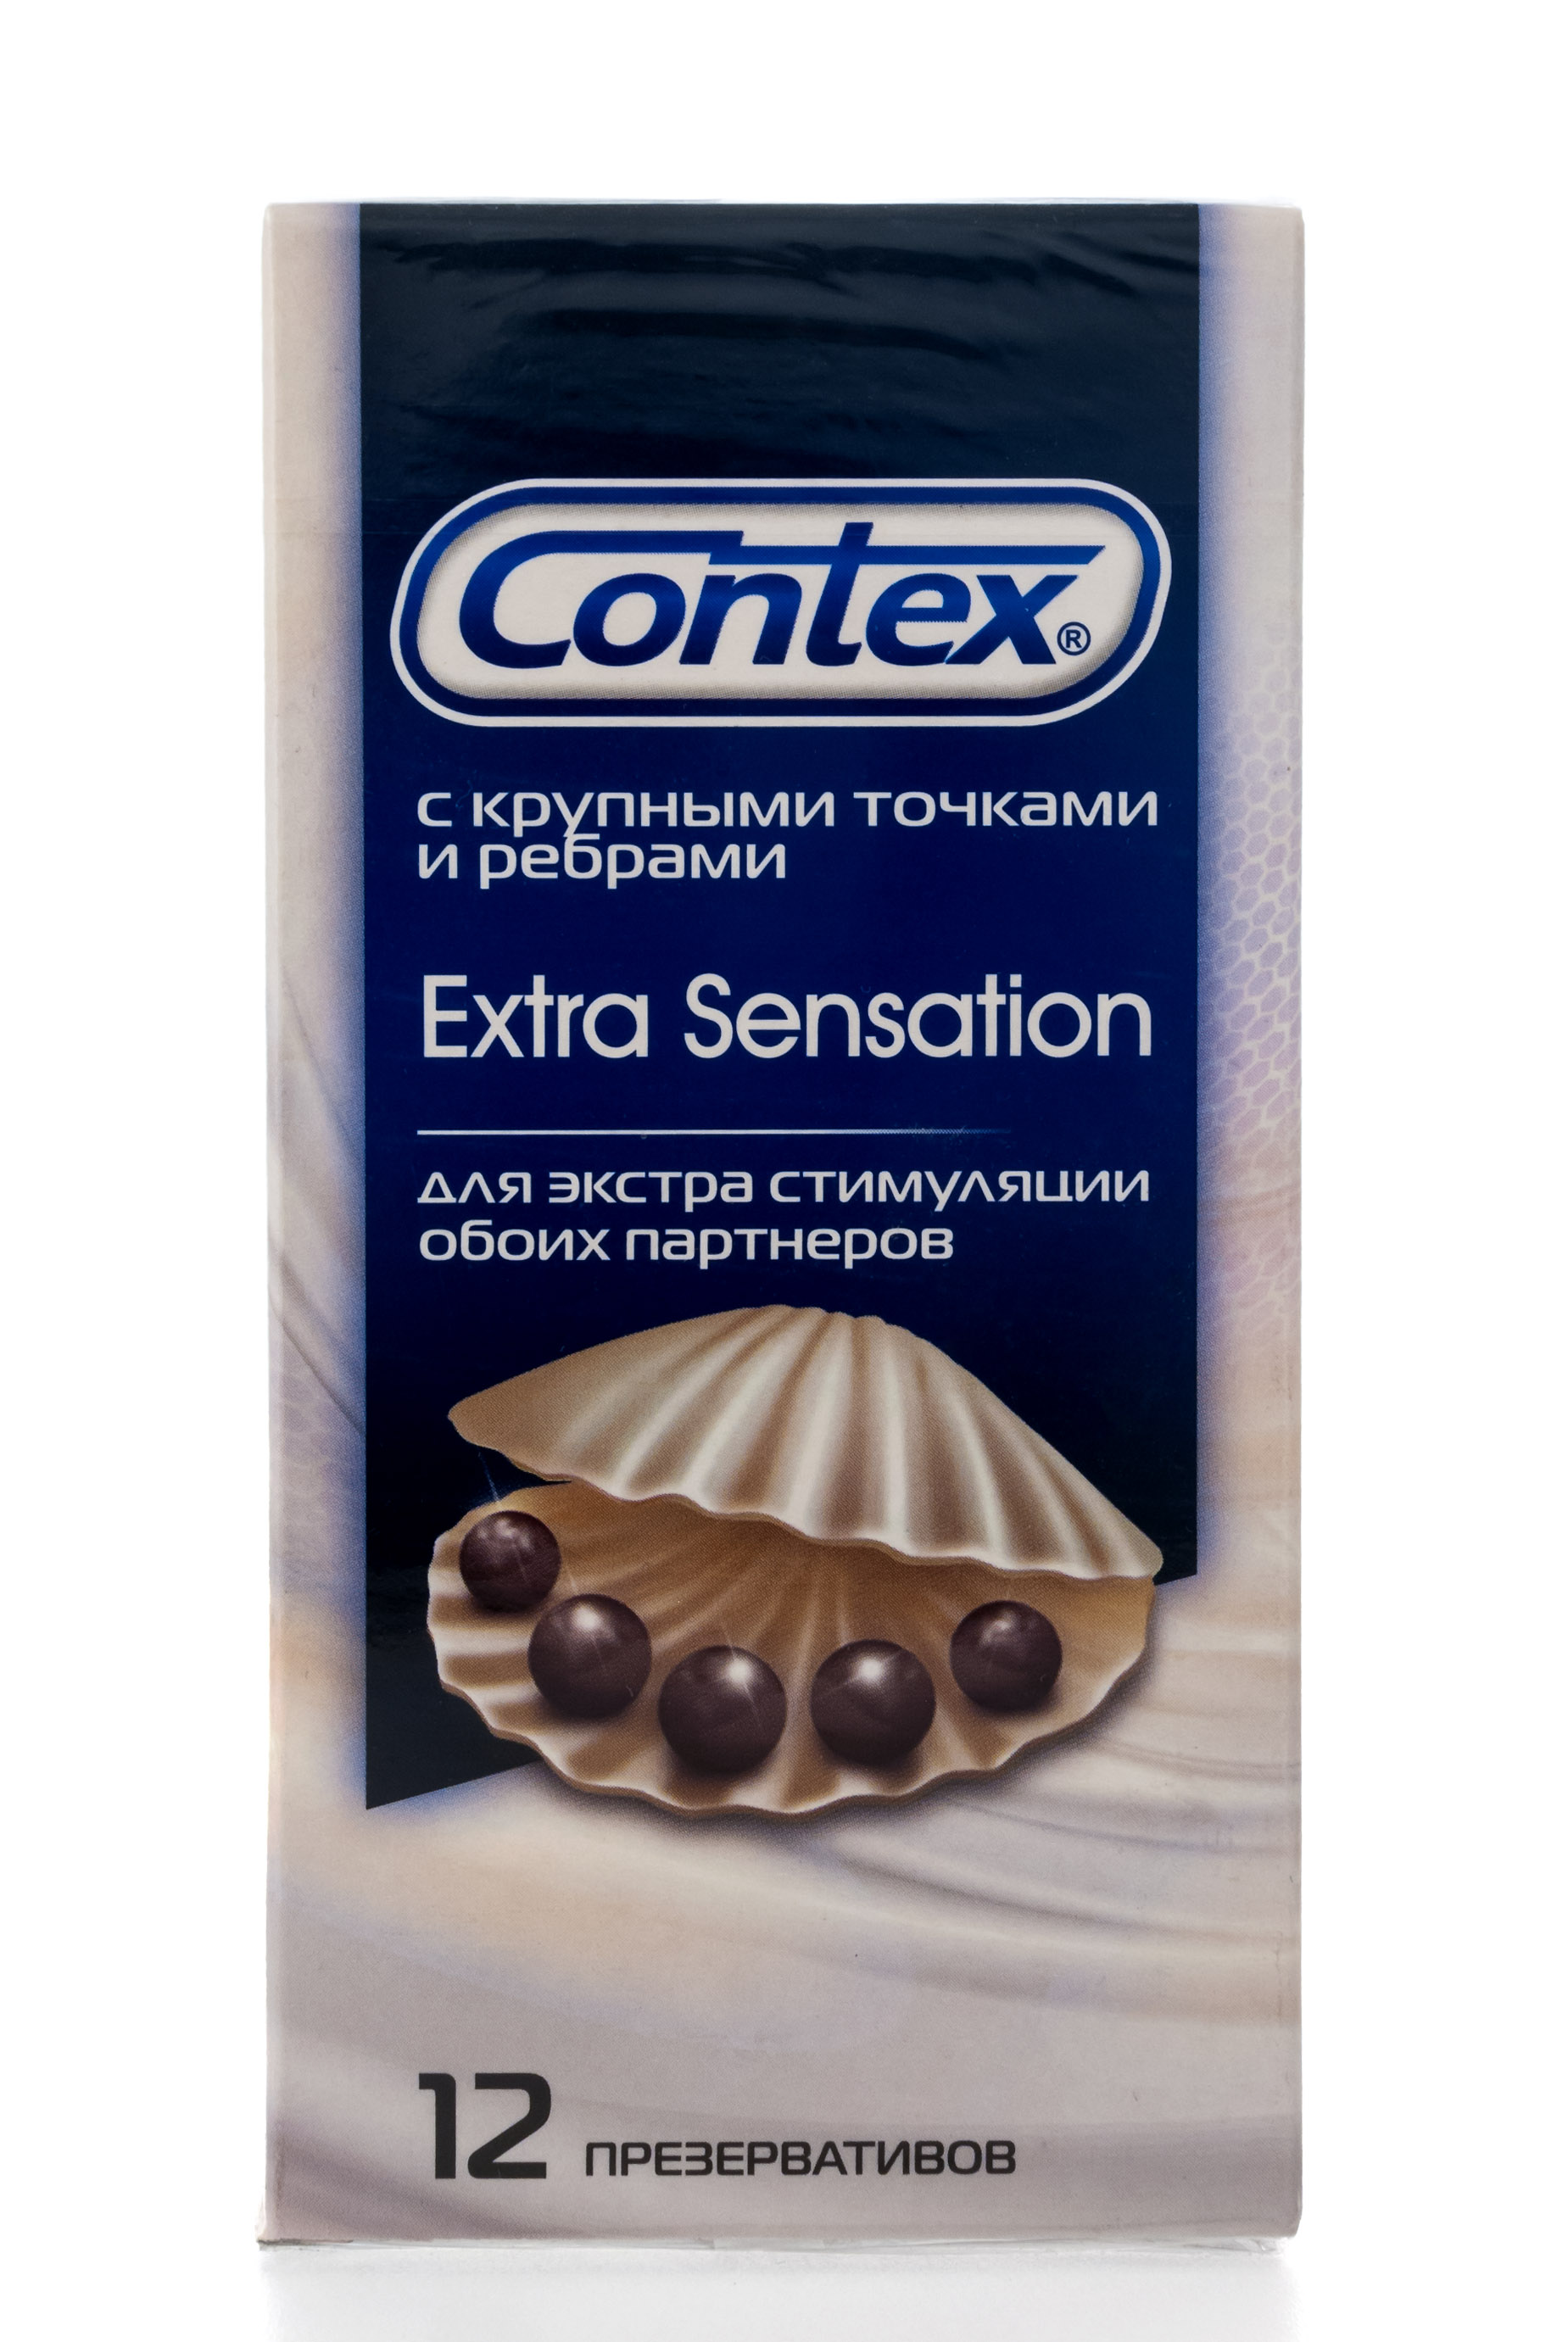 Contex Презервативы EXTRA SENSATION №12 (Contex, Презервативы) презервативы сверхтонкие латексные с точками 5 типов 30 шт